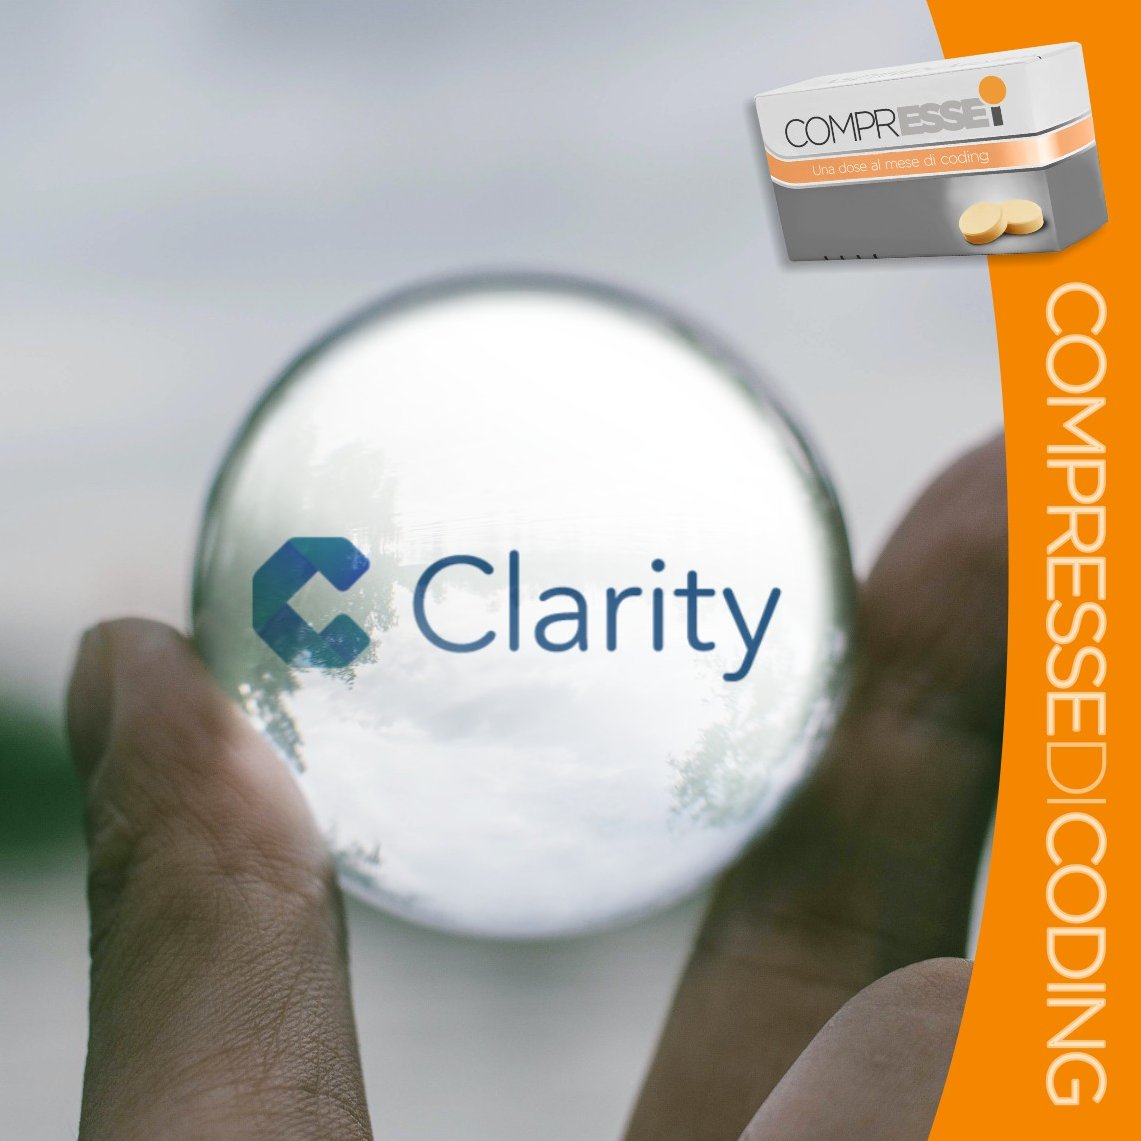 Come funziona Clarity? Breve viaggio nel tool di web analytics di Microsoft